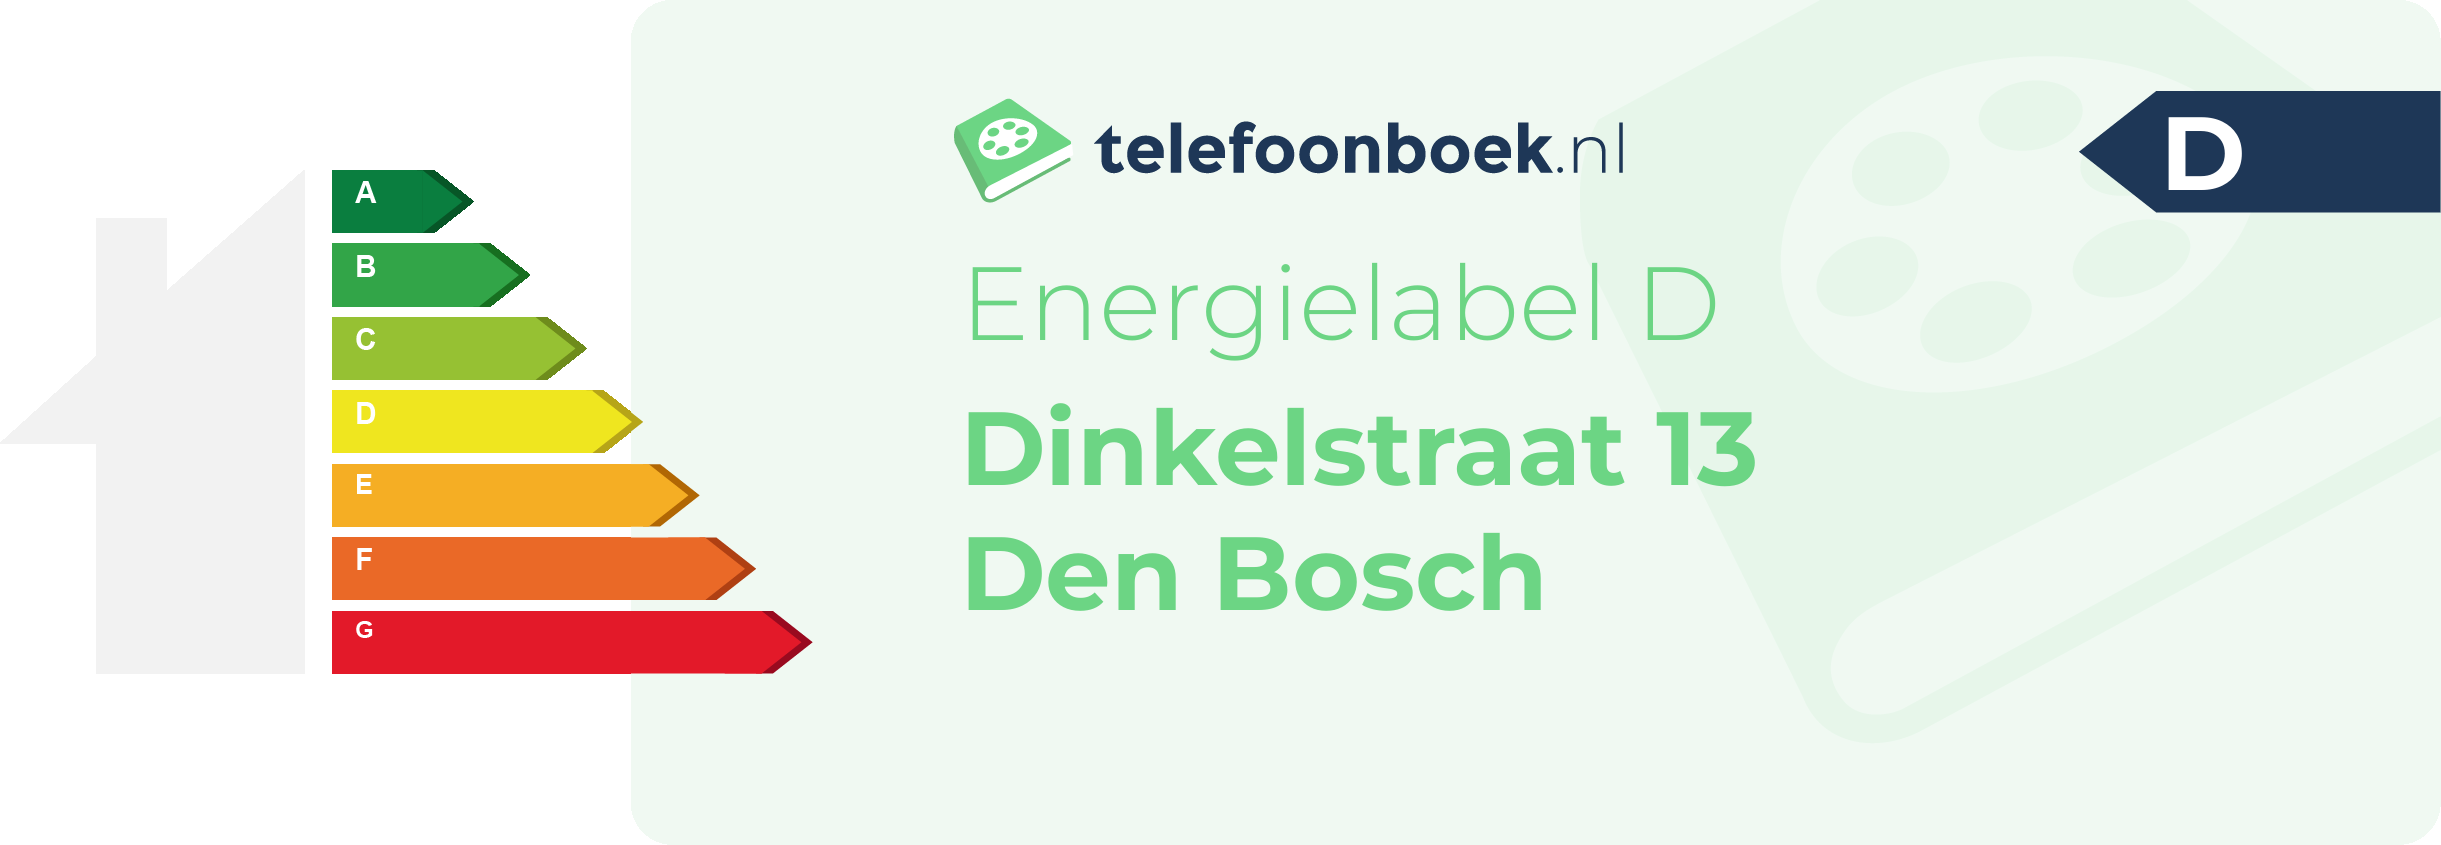 Energielabel Dinkelstraat 13 Den Bosch